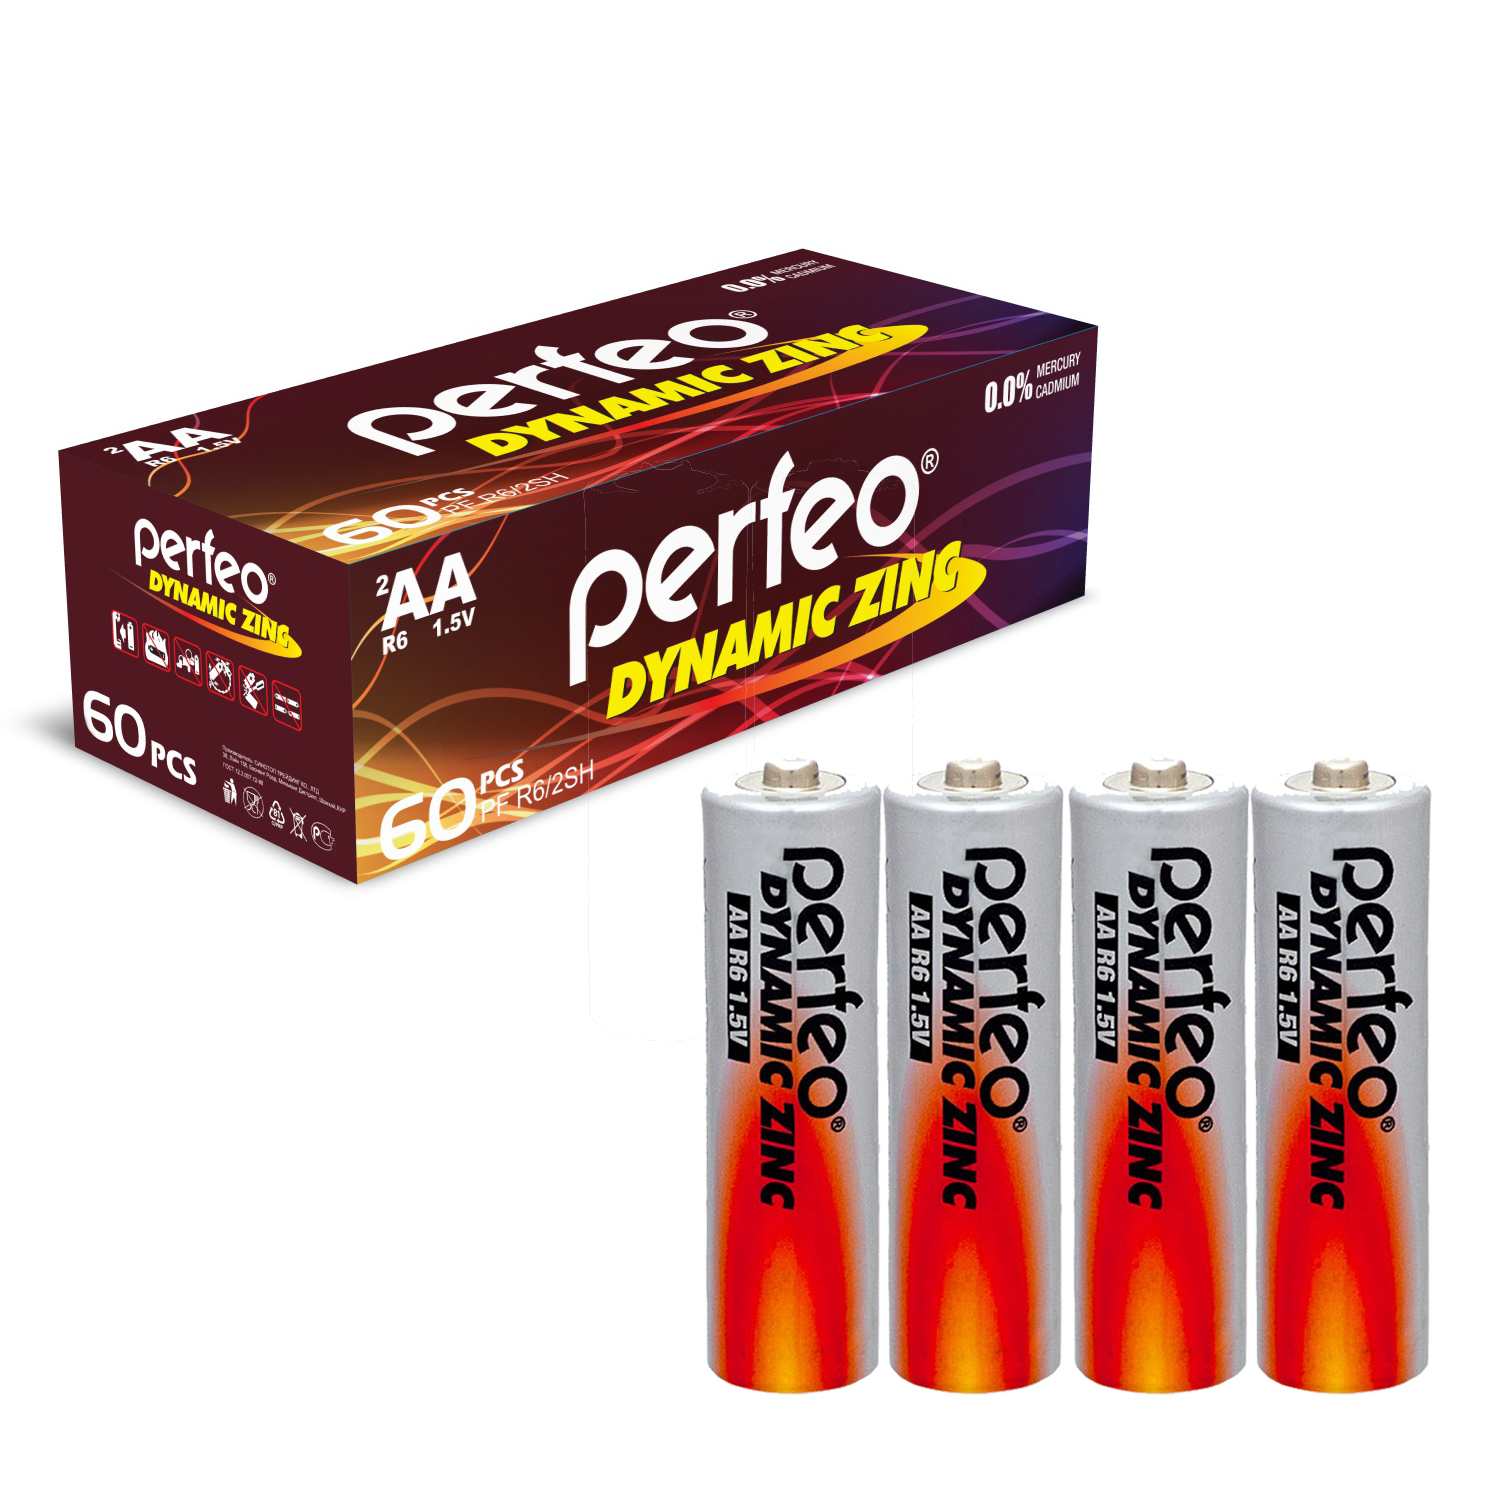 Батарейка Perfeo R6/4SH Dynamic Zinc 60 шт батарейки perfeo dynamic zinc ааа lr03 60 шт 15x4 шт